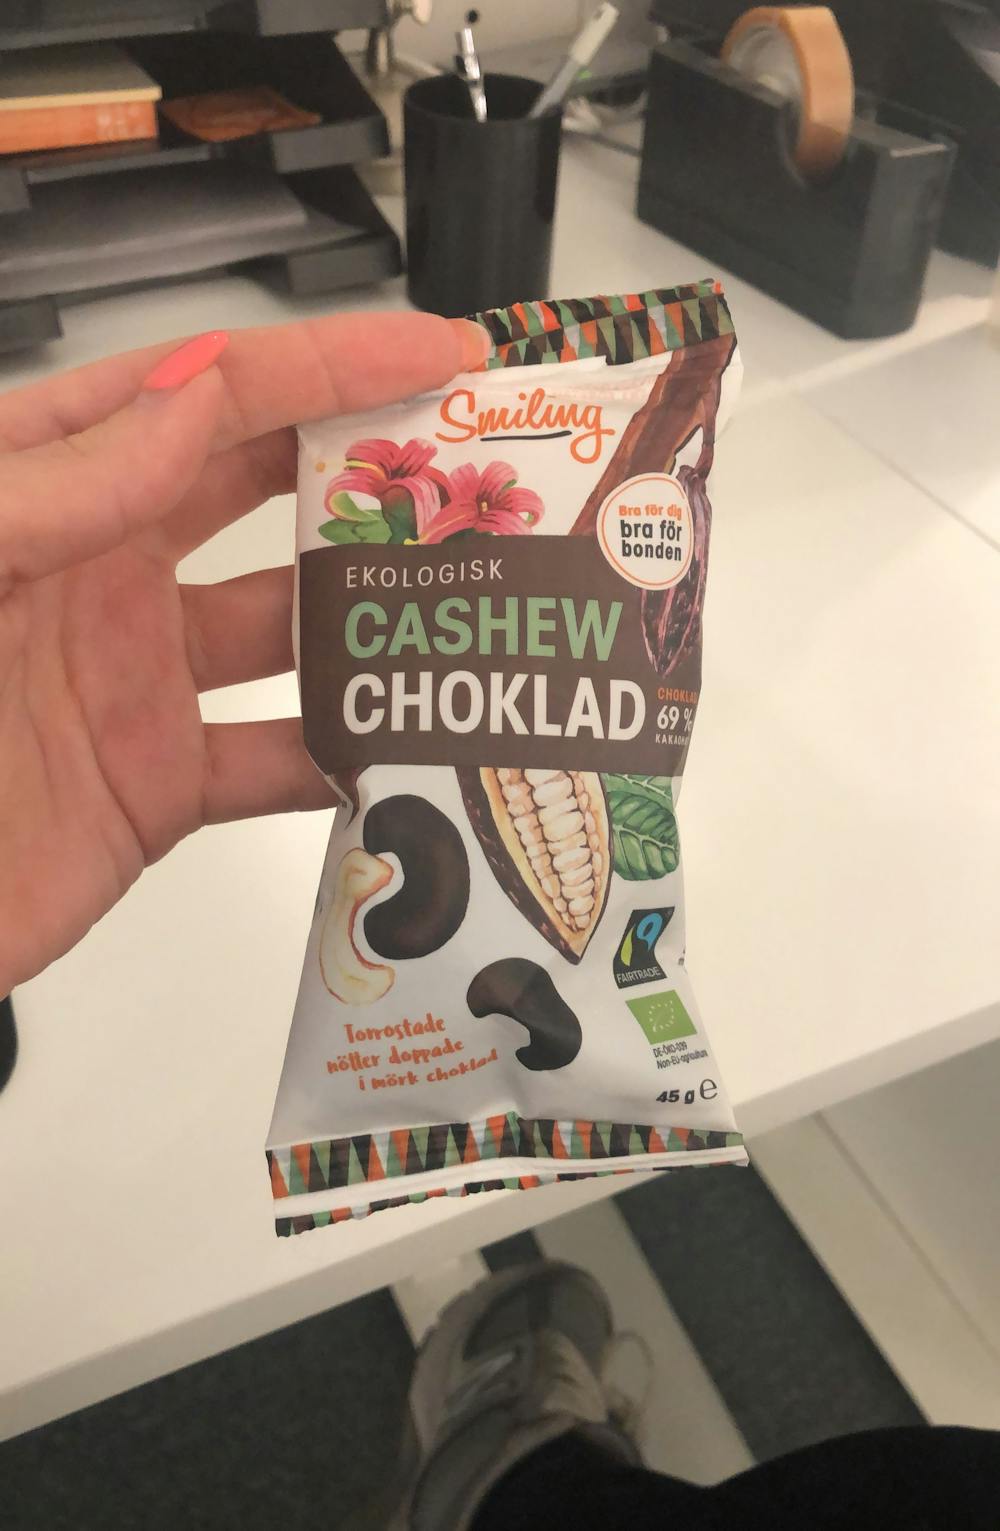 Ekologisk cashew choklad, Smiling